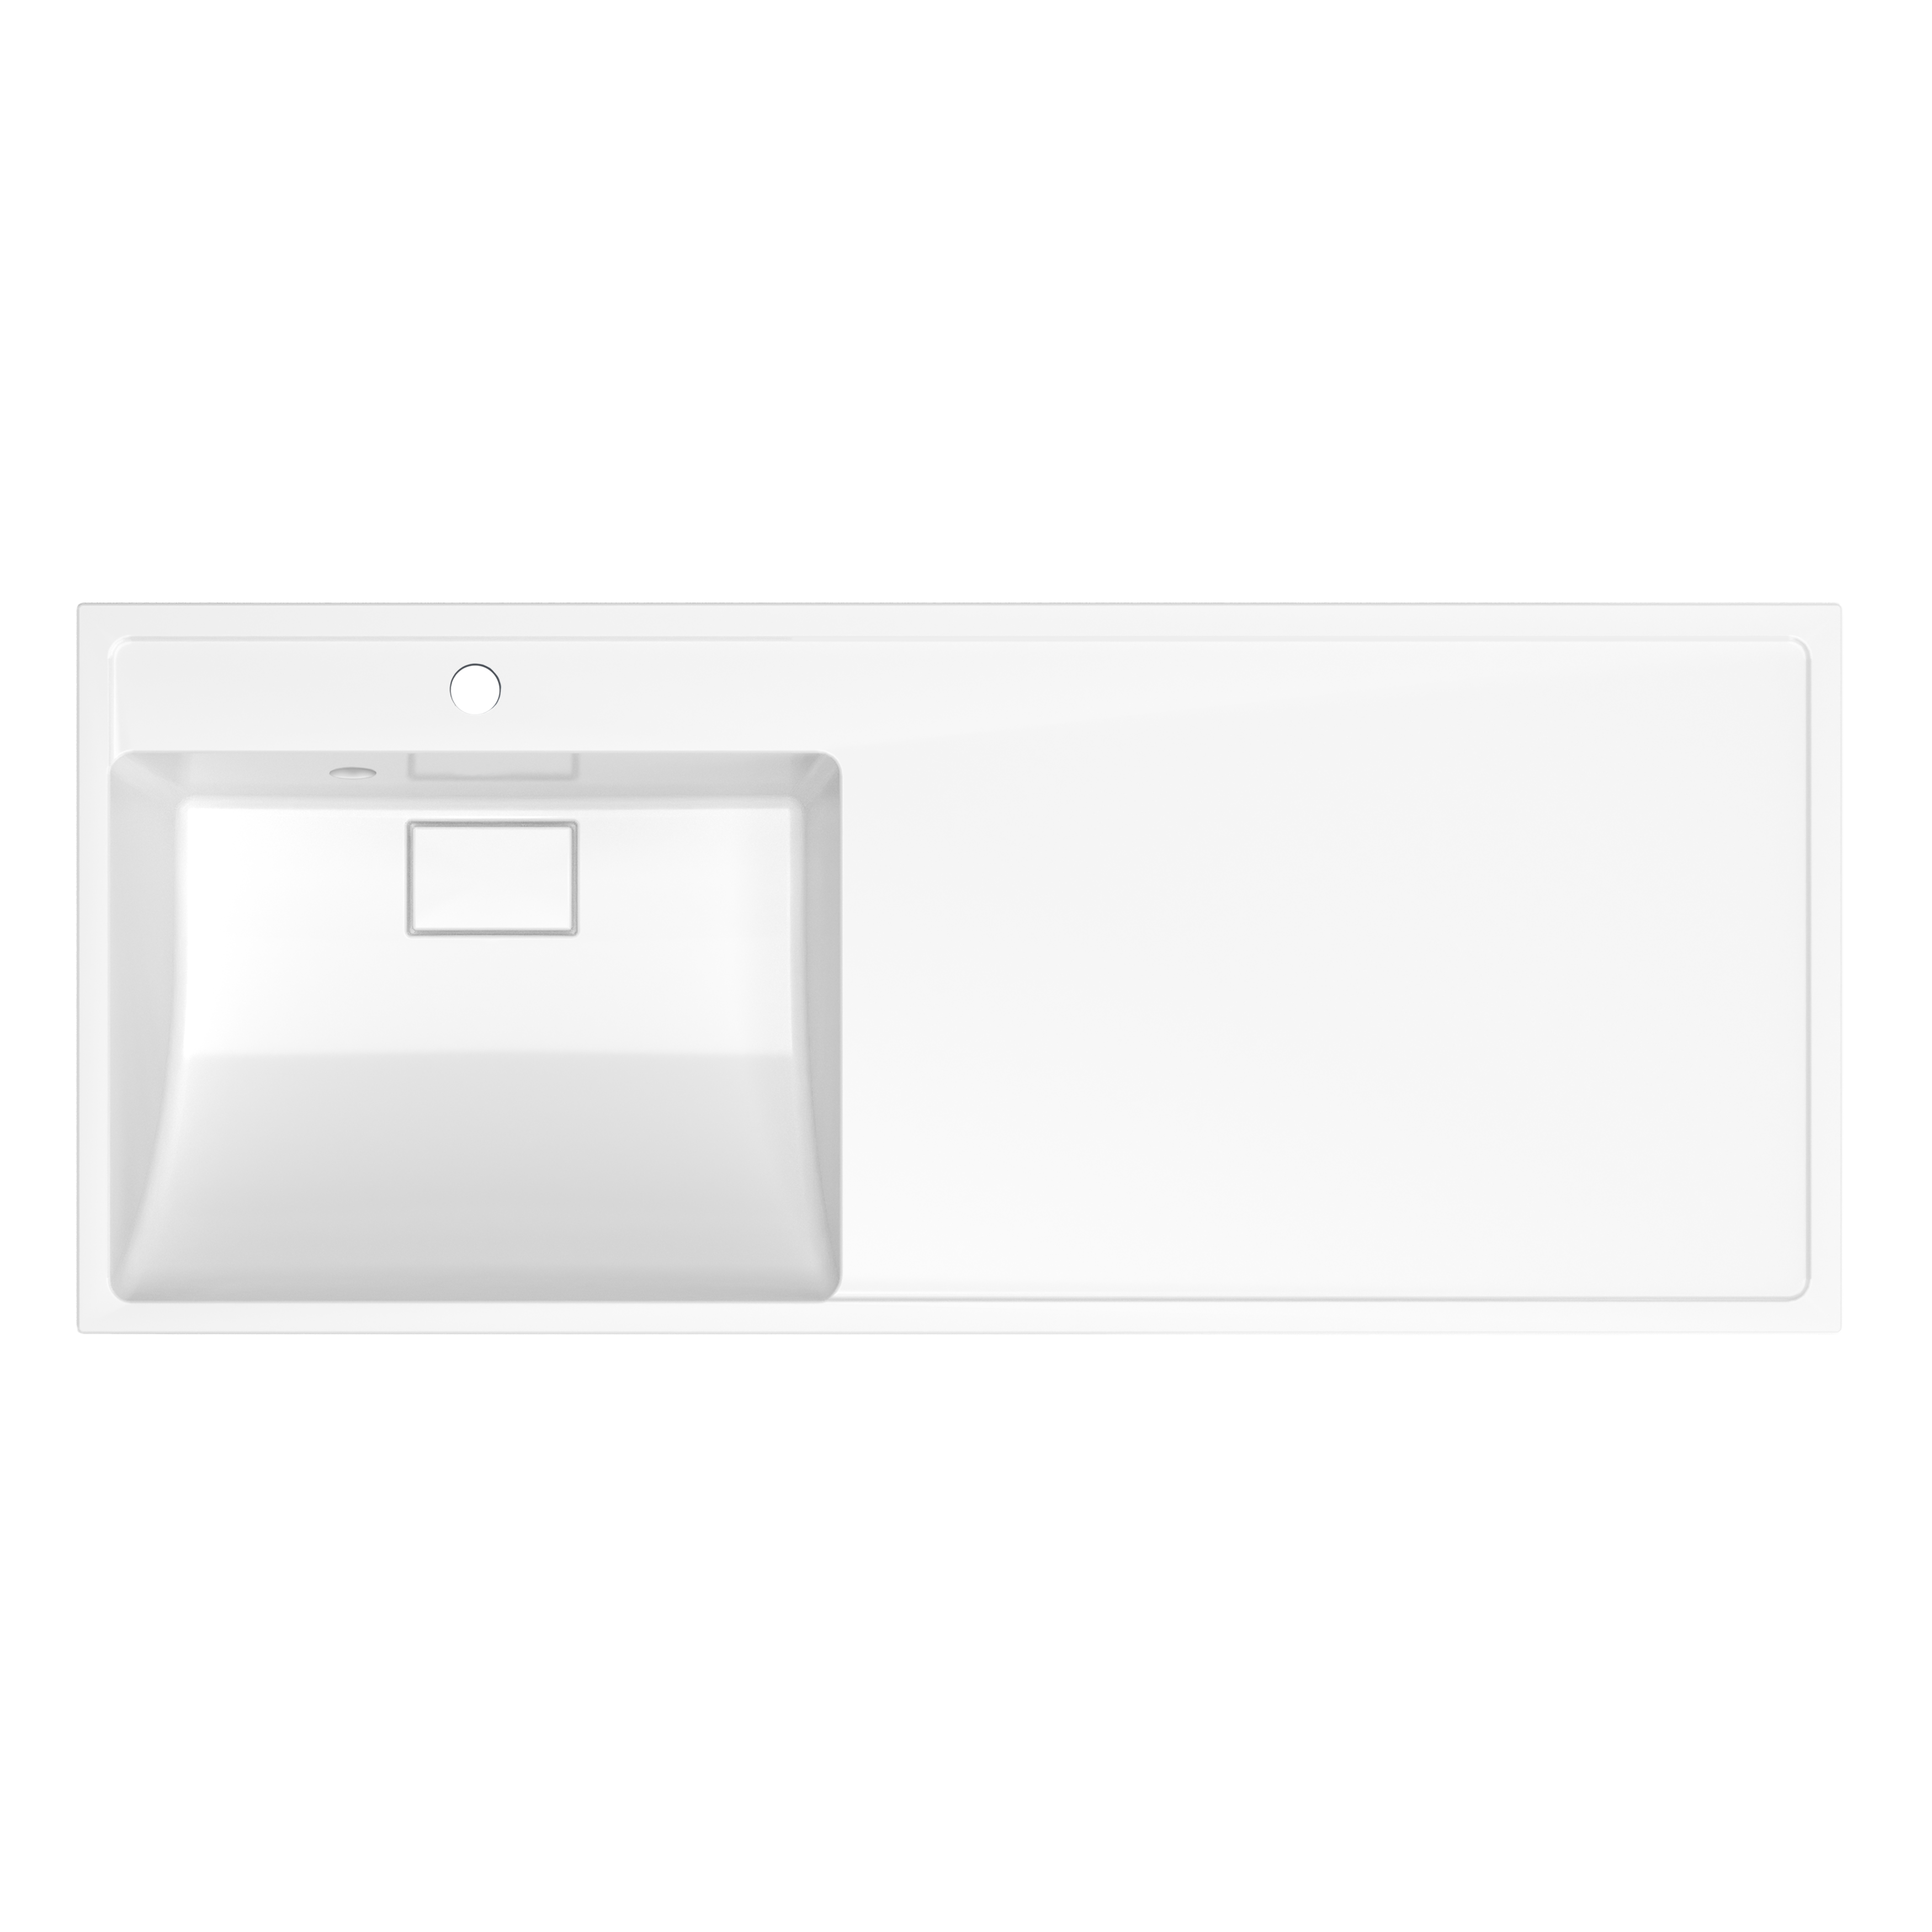 Раковина над стиральной машиной Paola Magenta 1100 L 110 см белая глянцевая, цвет белый глянец - фото 1